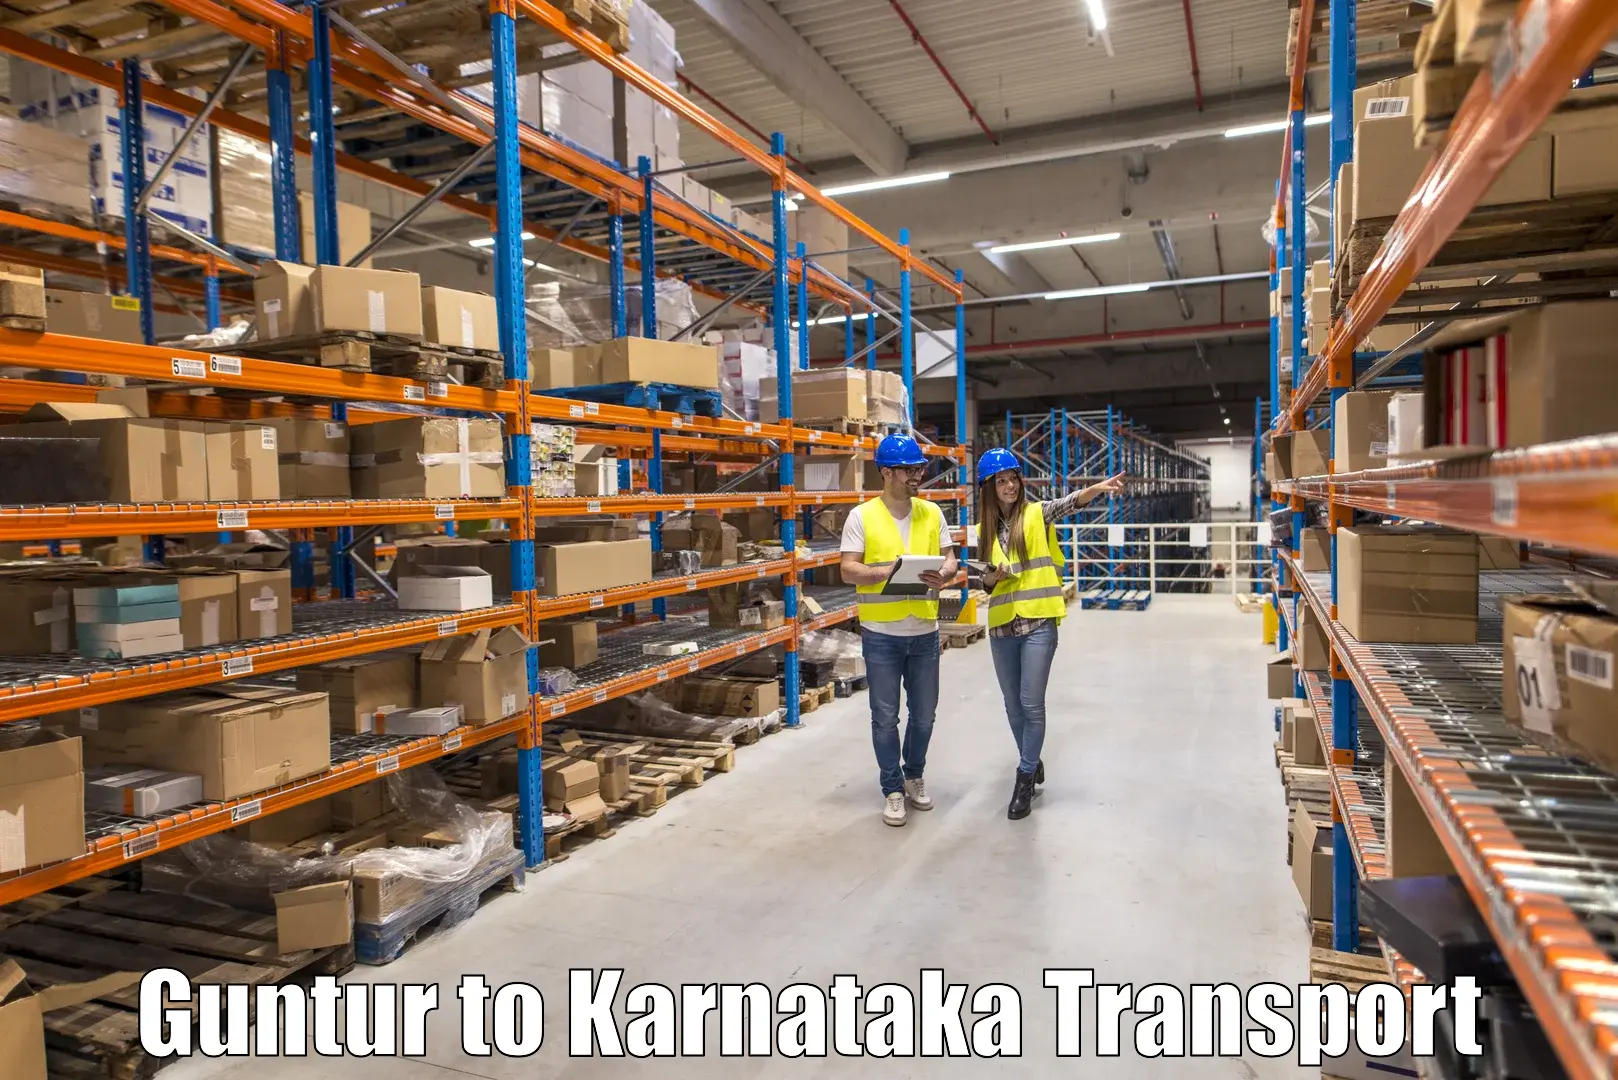 Cargo transport services Guntur to Kanjarakatte